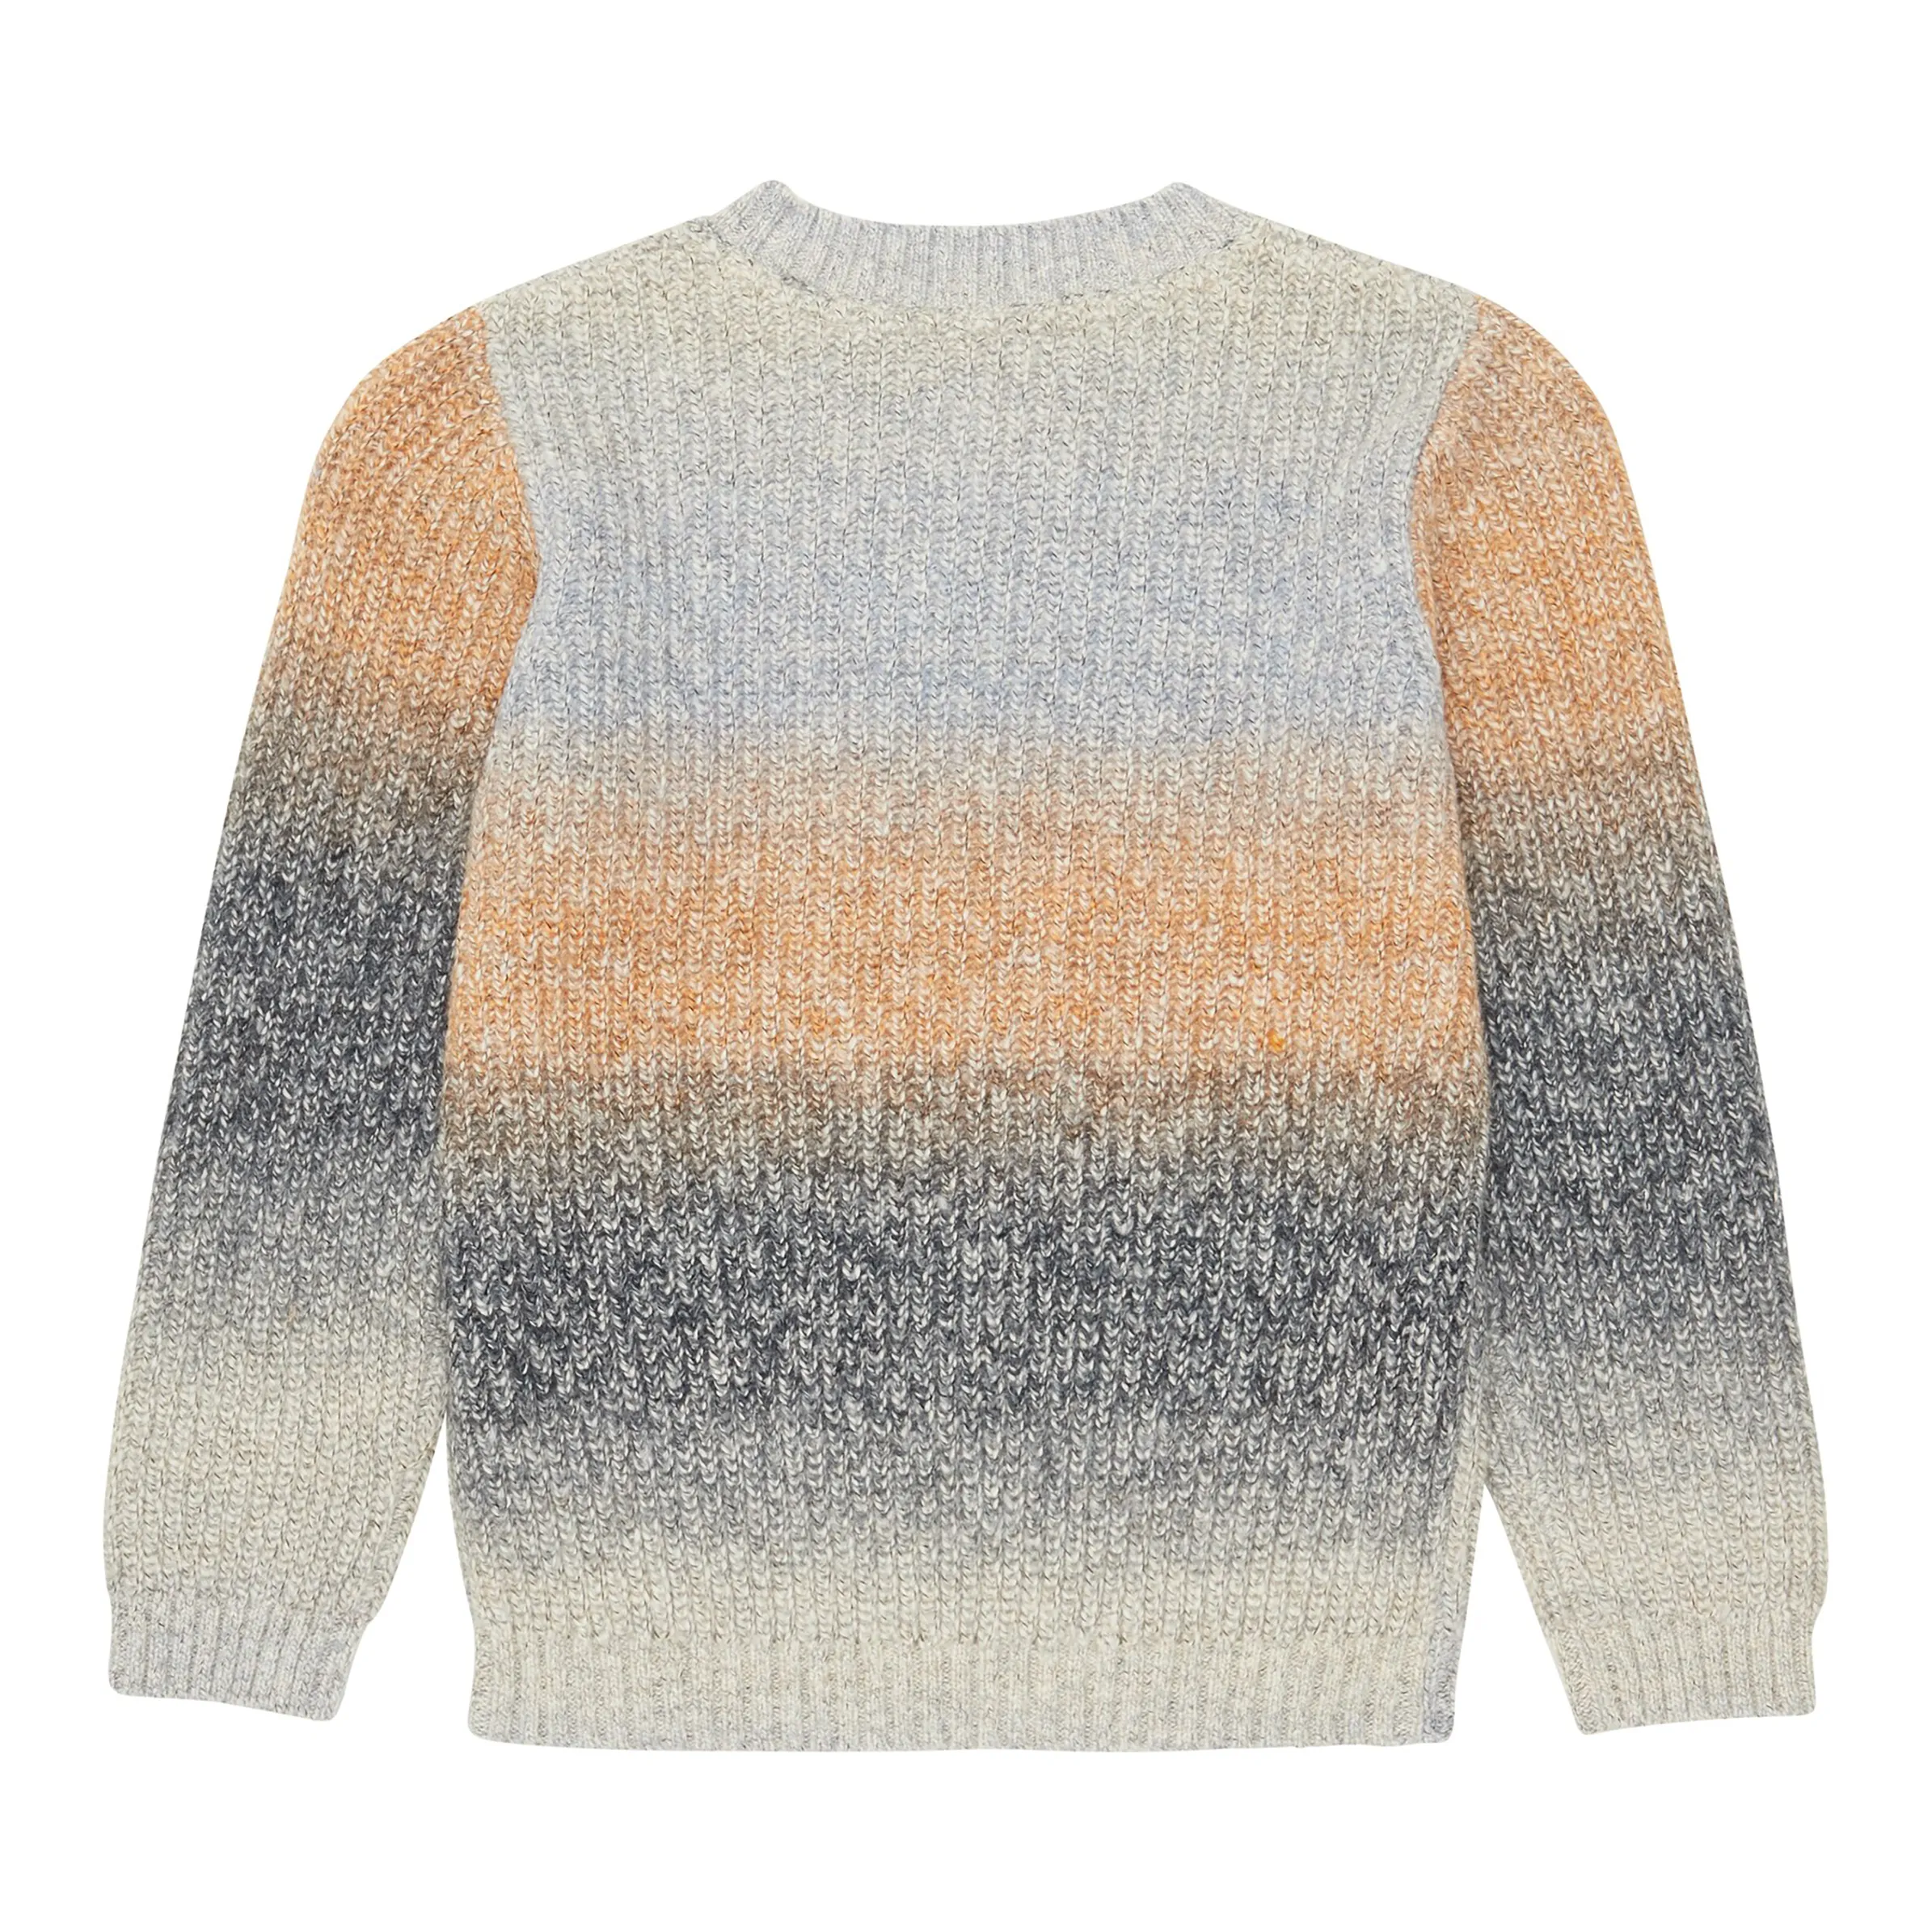 Tom Tailor 1038395 color gradient knit pu Bunt 890016 32592 2